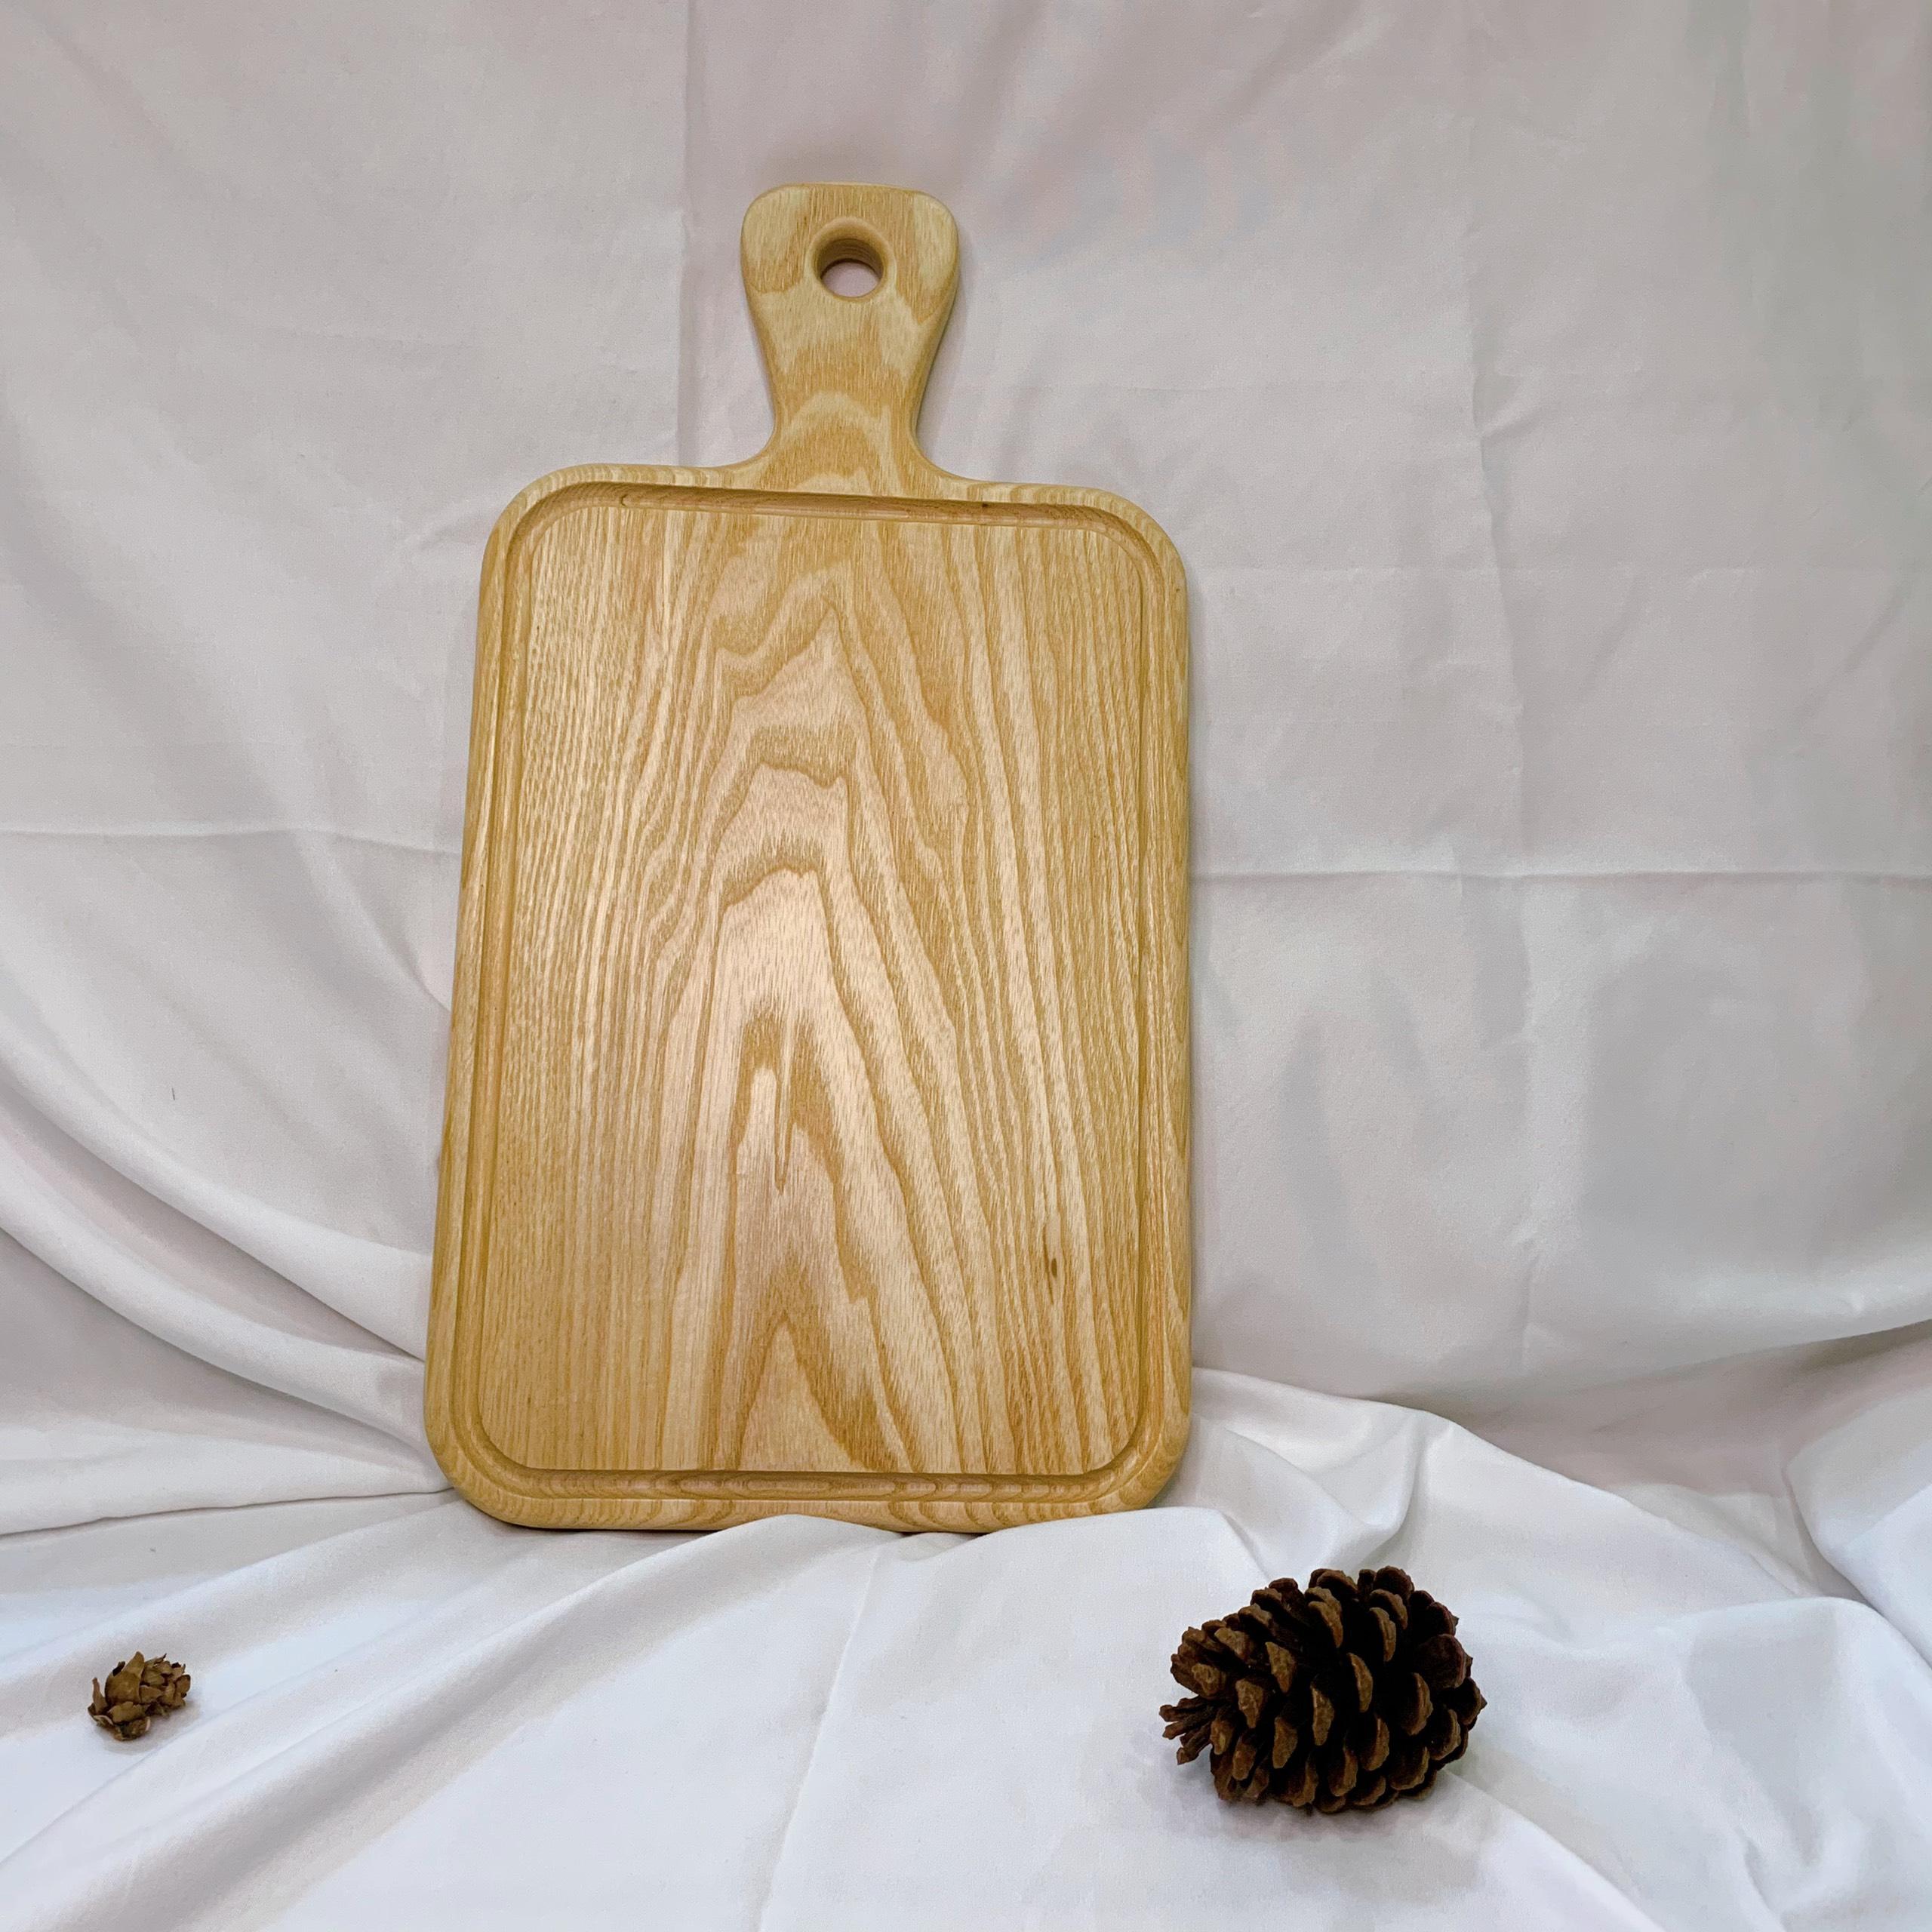 Thớt gỗ trang trí hình chữ nhật có tay cầm gỗ tần bì đựng đồ ăn, trái cây sang trọng